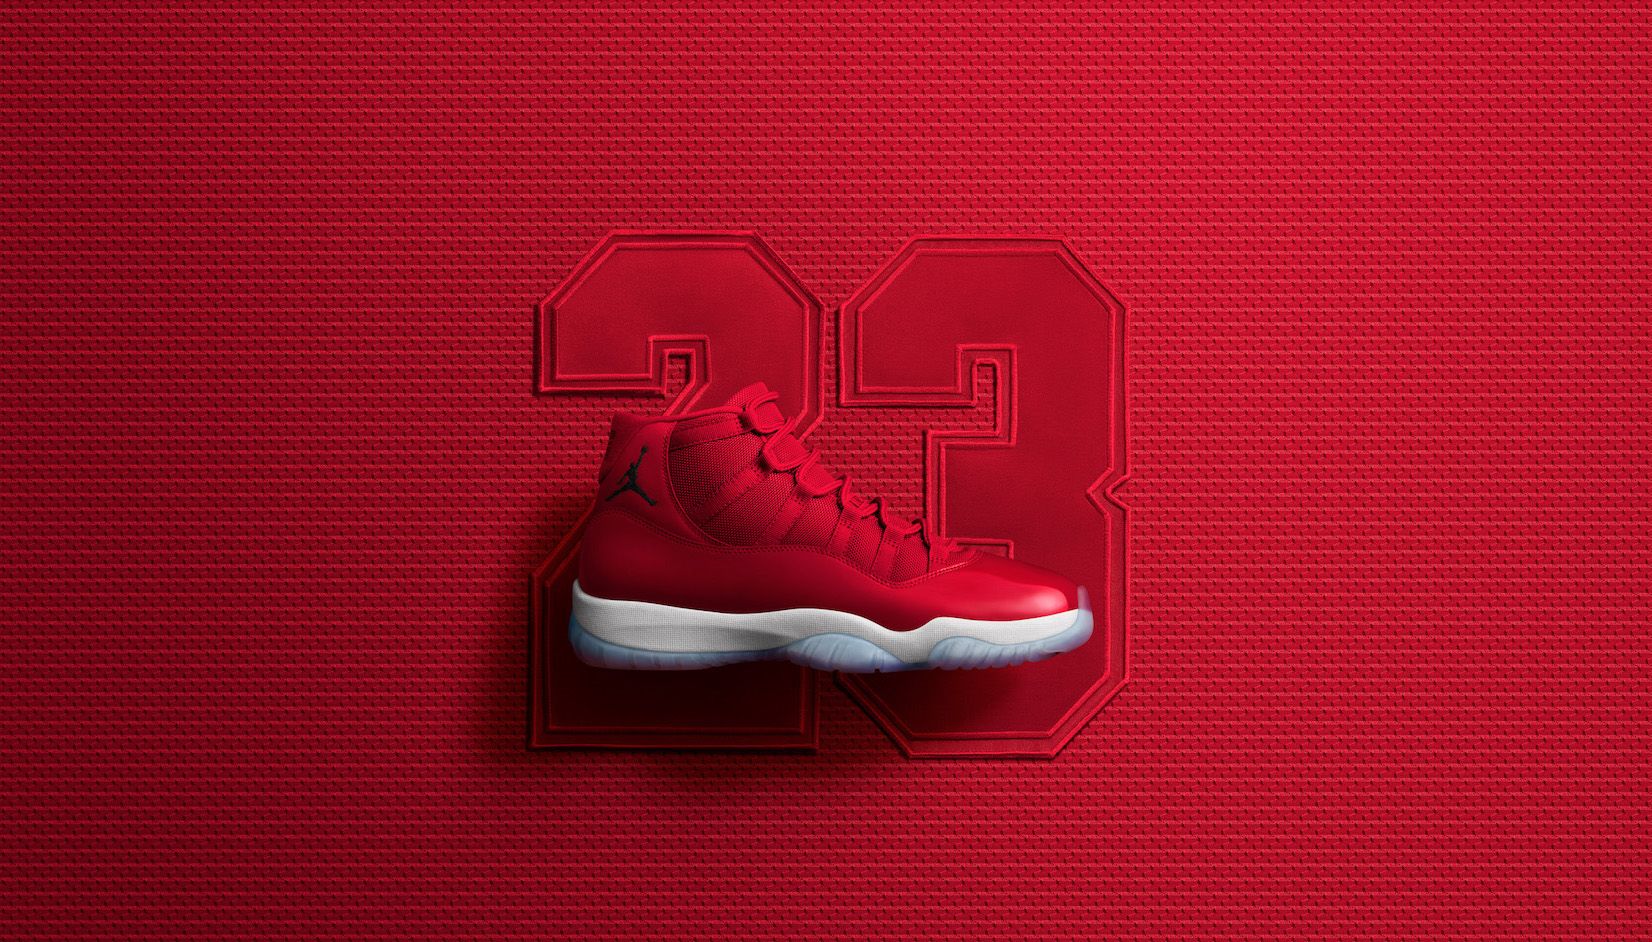 Jordan 11 Red Wallpaper